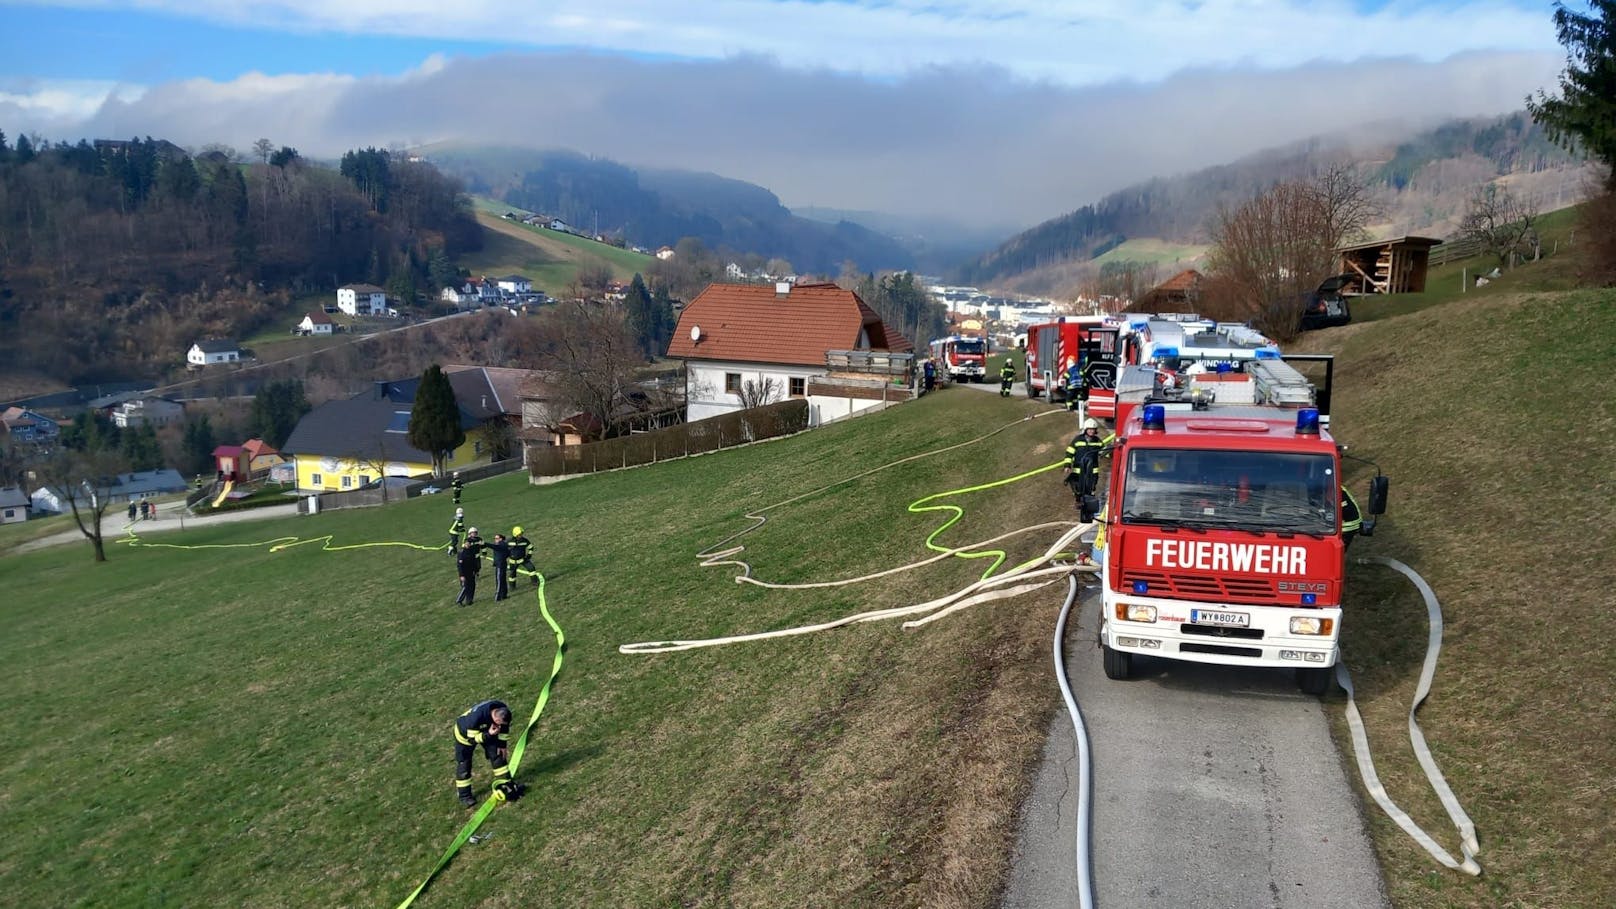 120 Feuerwehrleute bekämpften Brand in Mehrparteienhaus